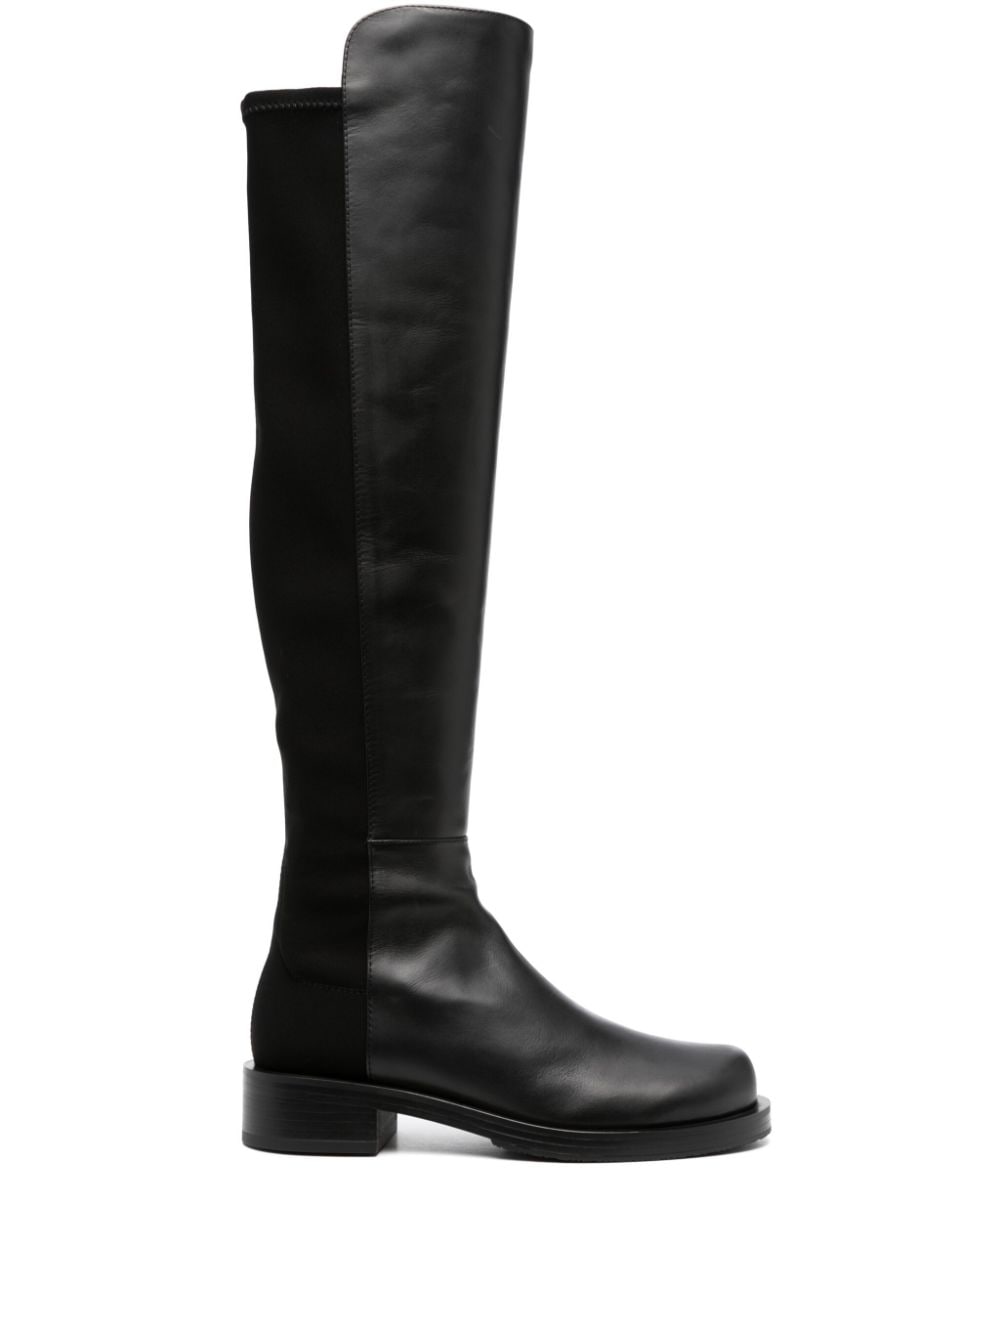 Stuart Weitzman 5050 Bold 40mm leather boot - Black von Stuart Weitzman